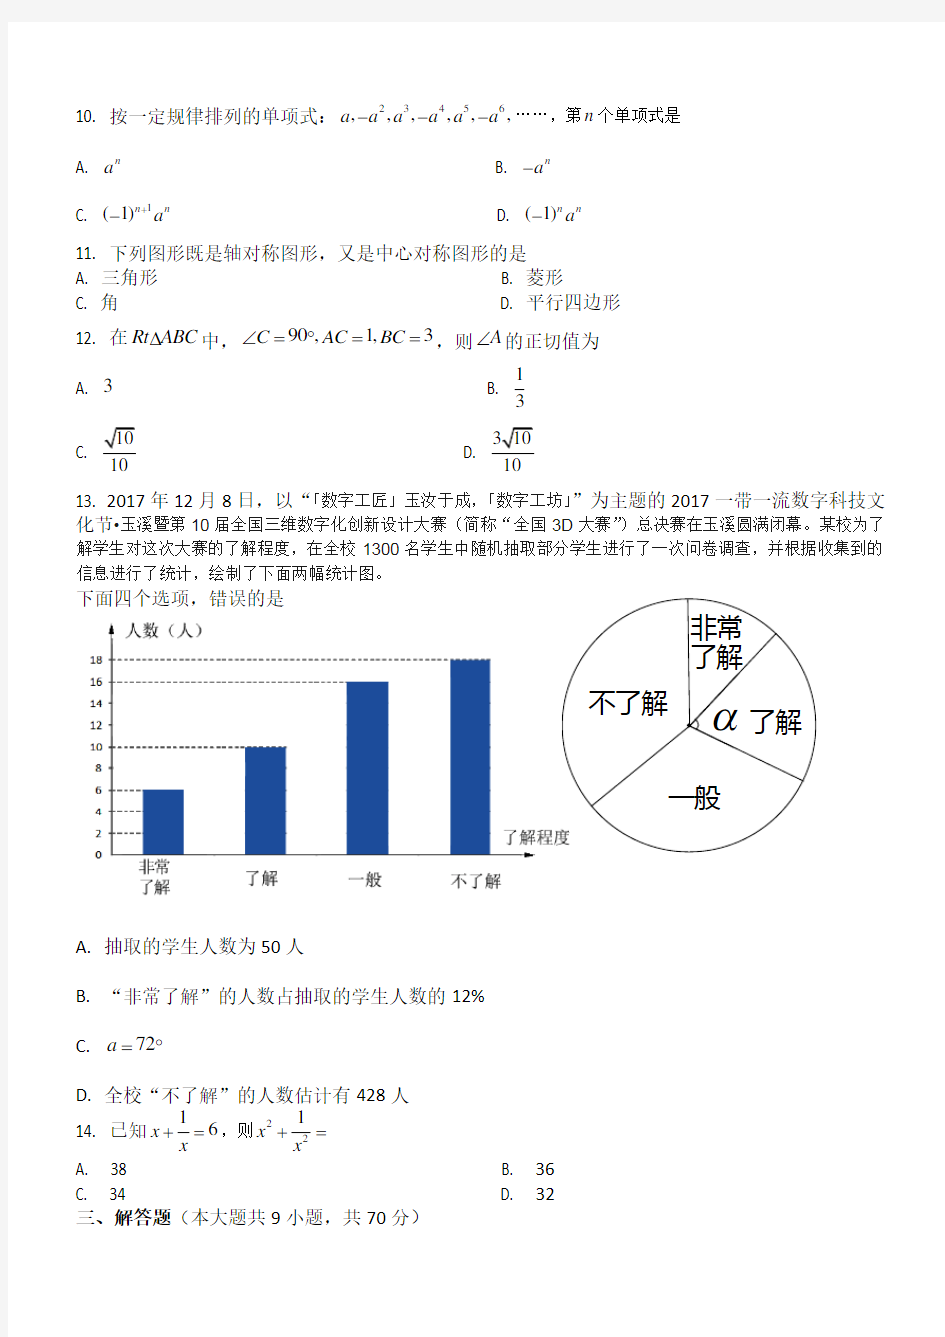 2018年云南省初中学业水平考试数学试题 - 答题卡-答案